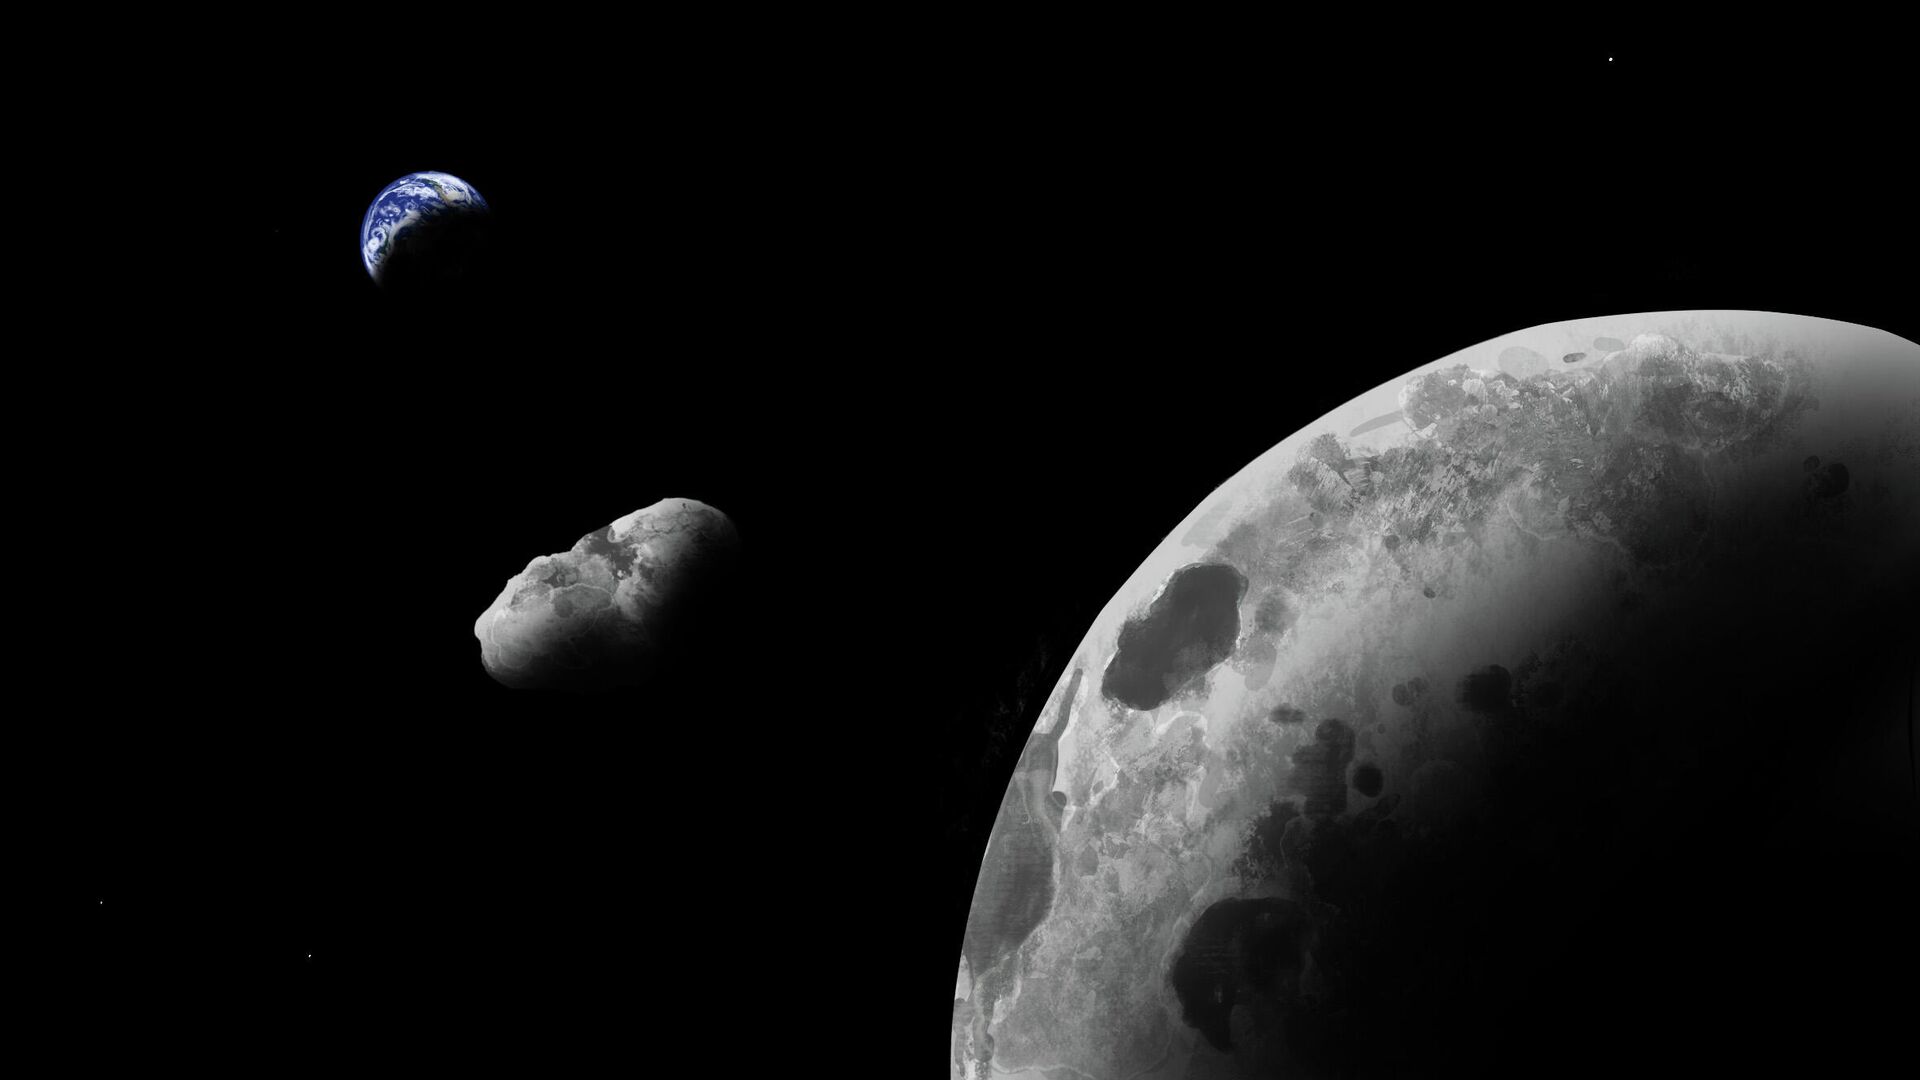 Художественное представление астероида системе Земля - Луна - РИА Новости, 1920, 23.11.2021